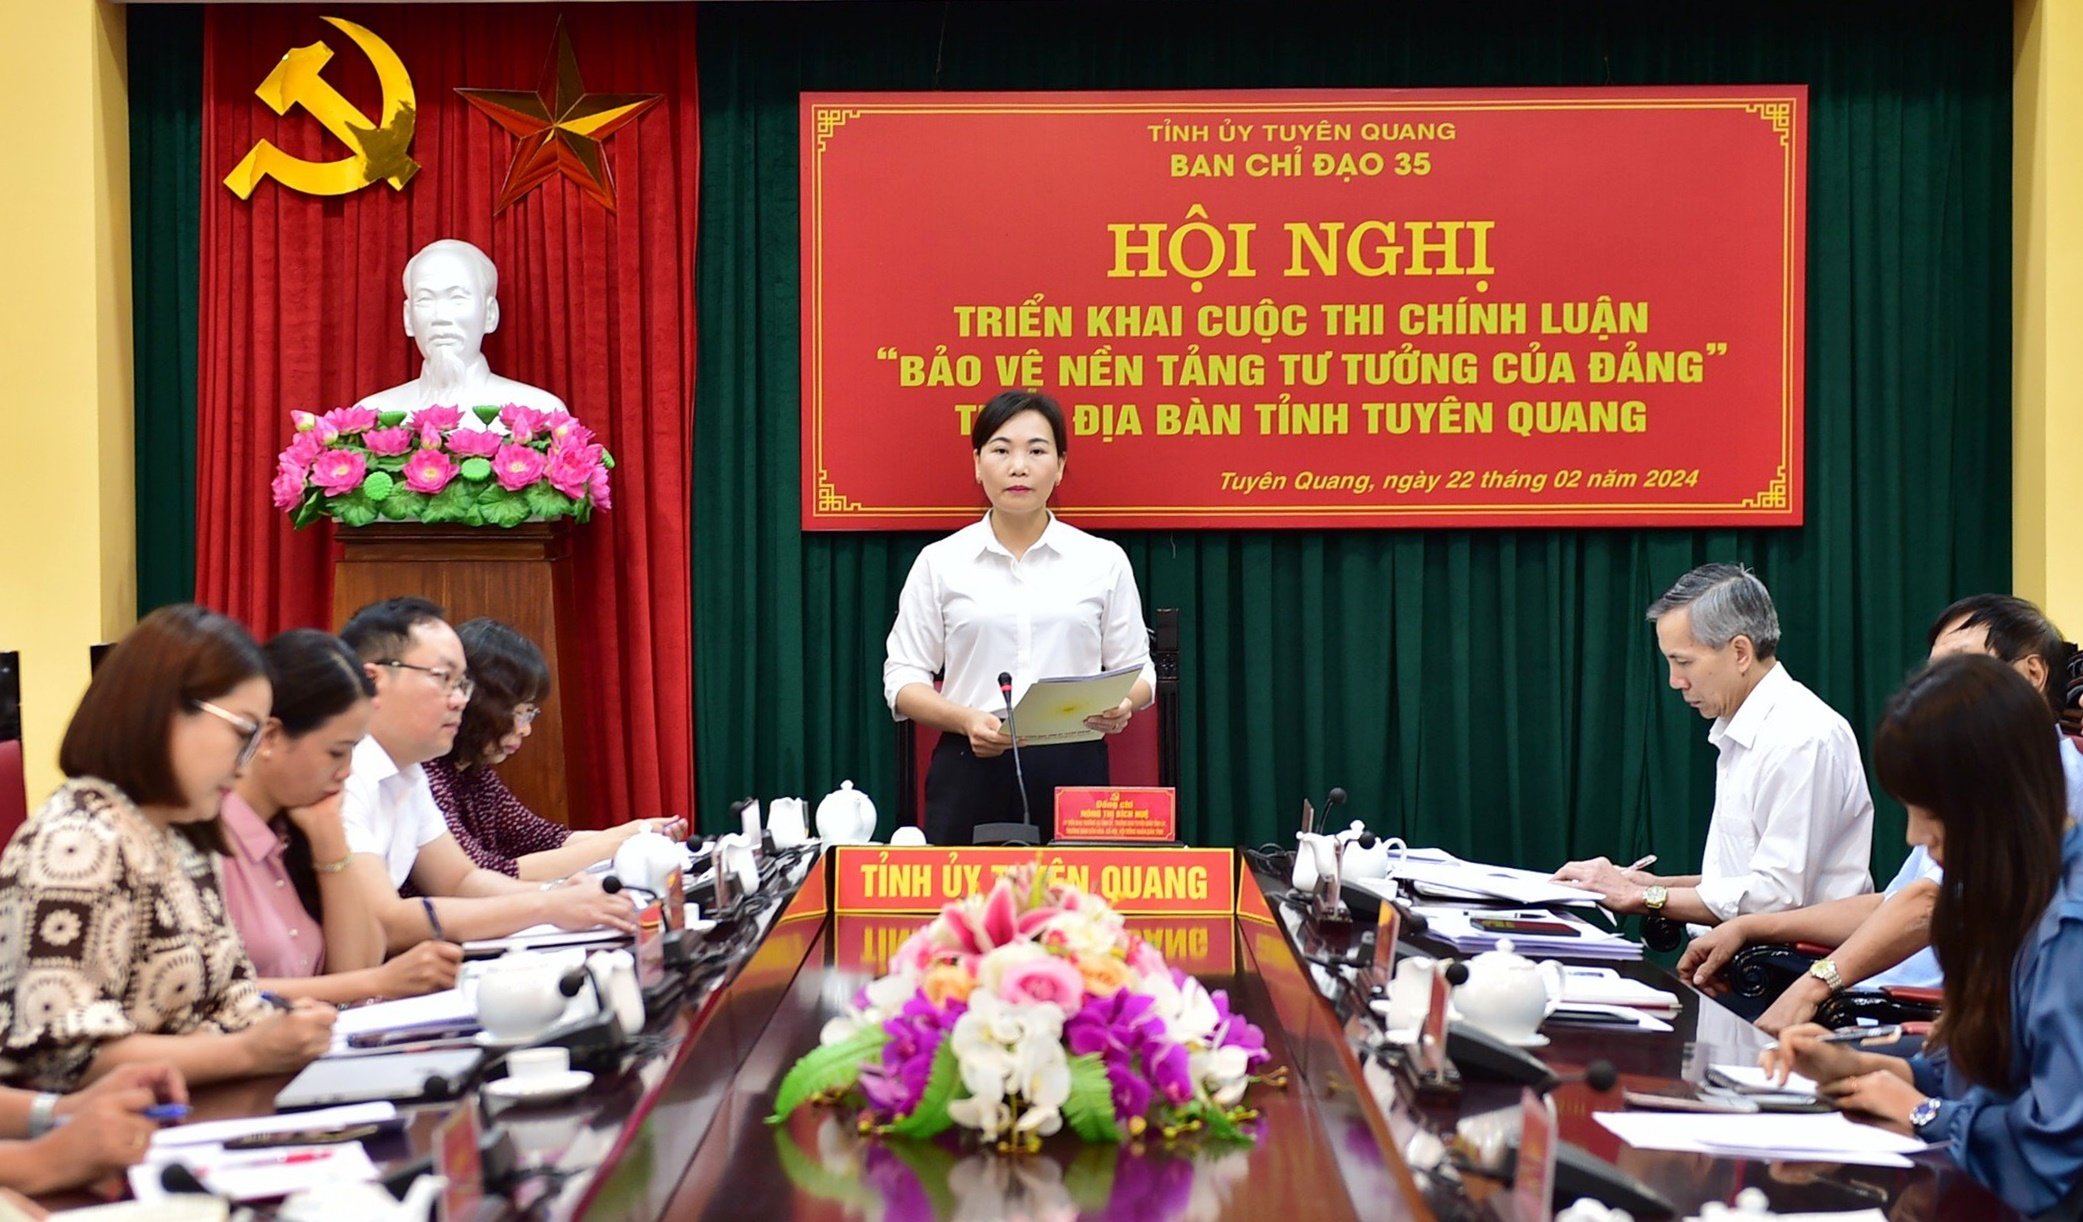 Tuyên Quang-Lan tỏa Cuộc thi chính luận về bảo vệ nền tảng tư tưởng của Đảng